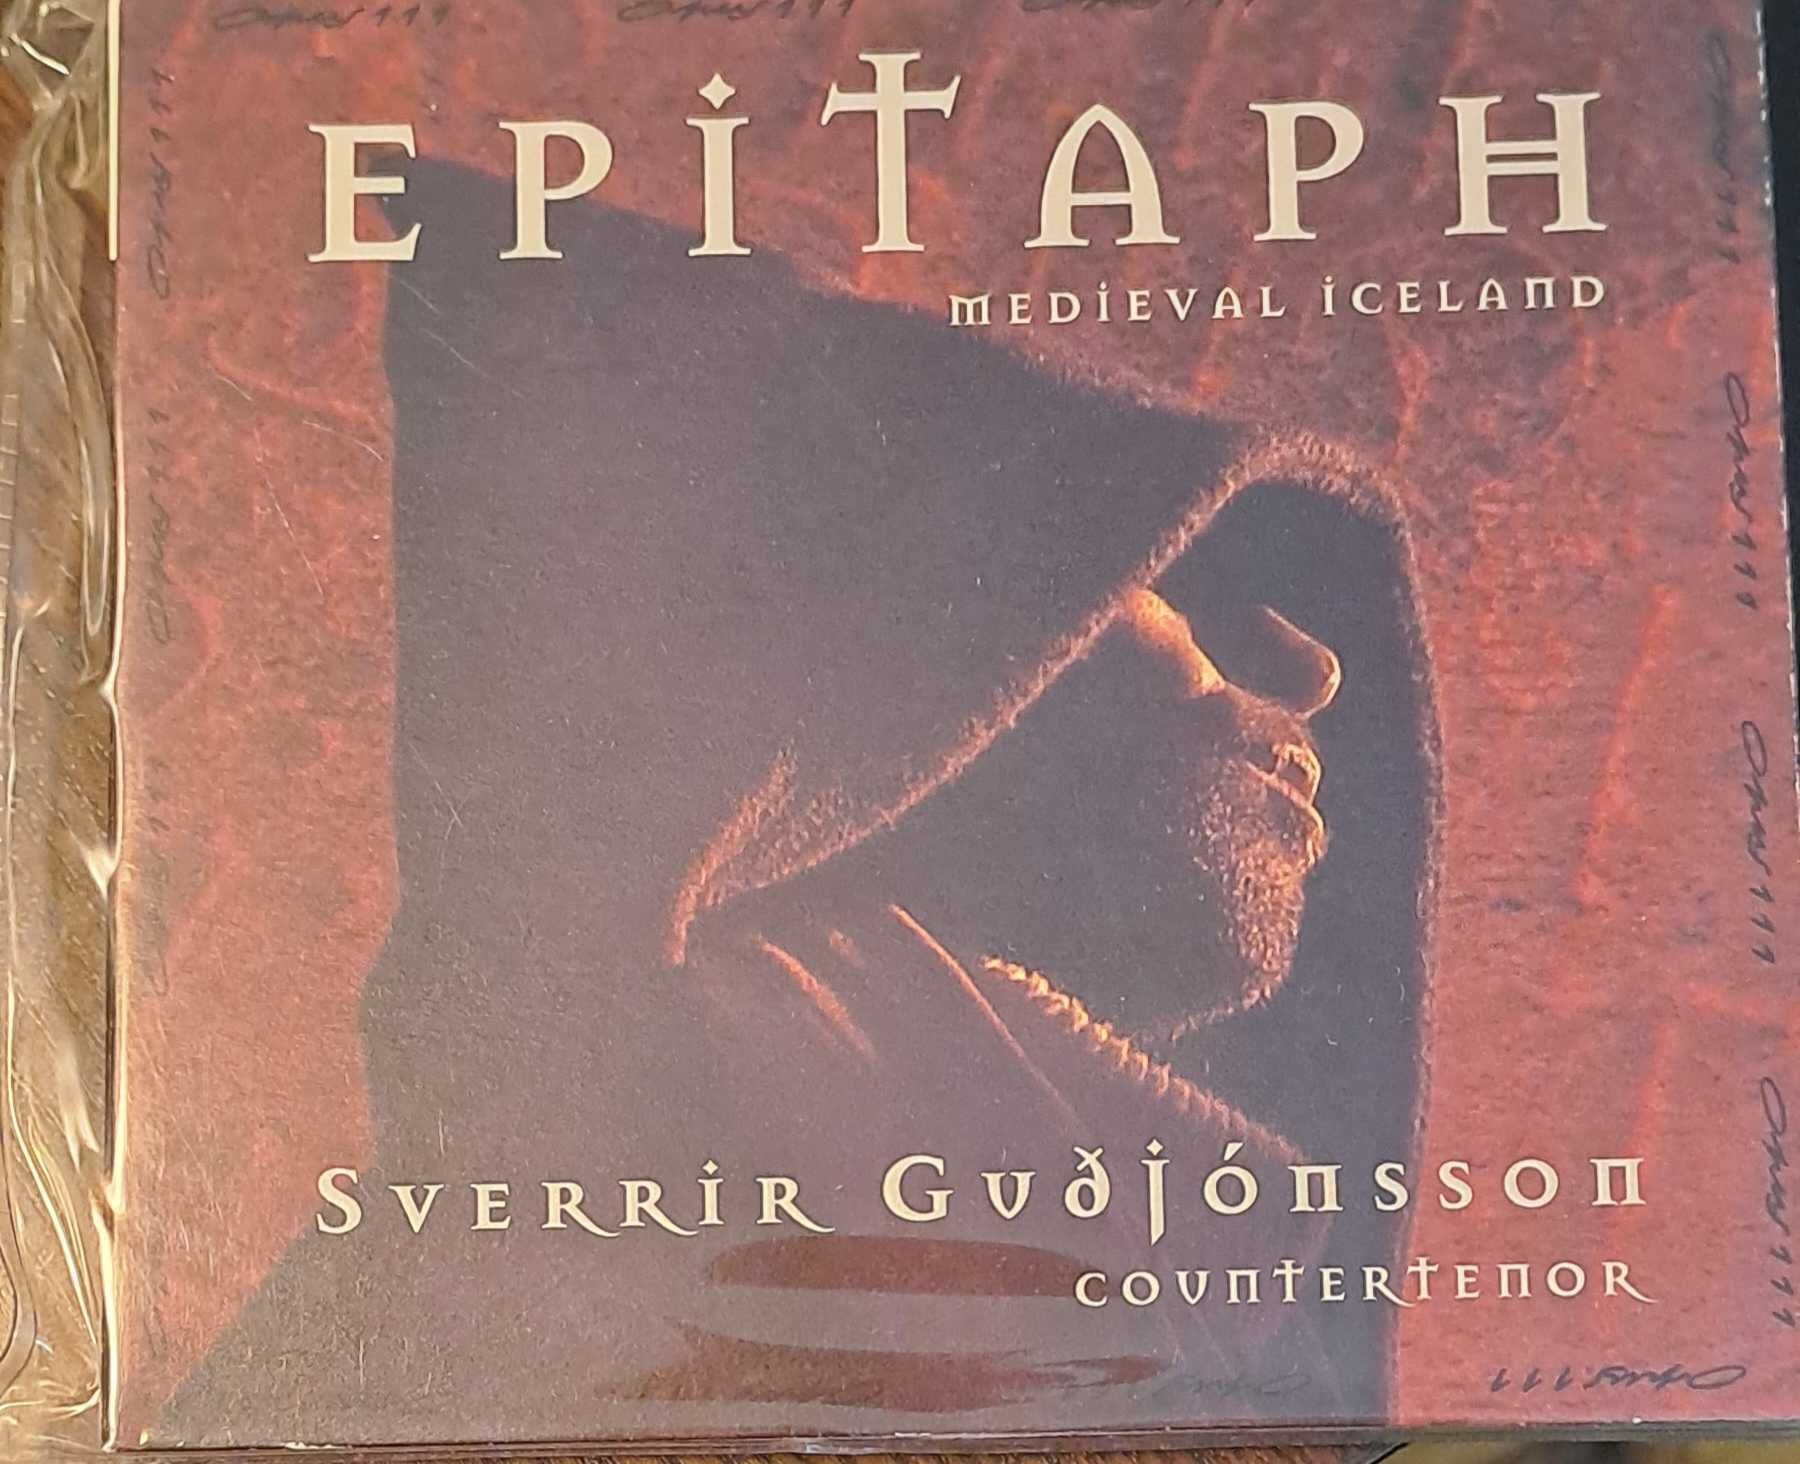 Epitaph Medieval Iceland - "Sverrir Gudjonsson Covntertenor"